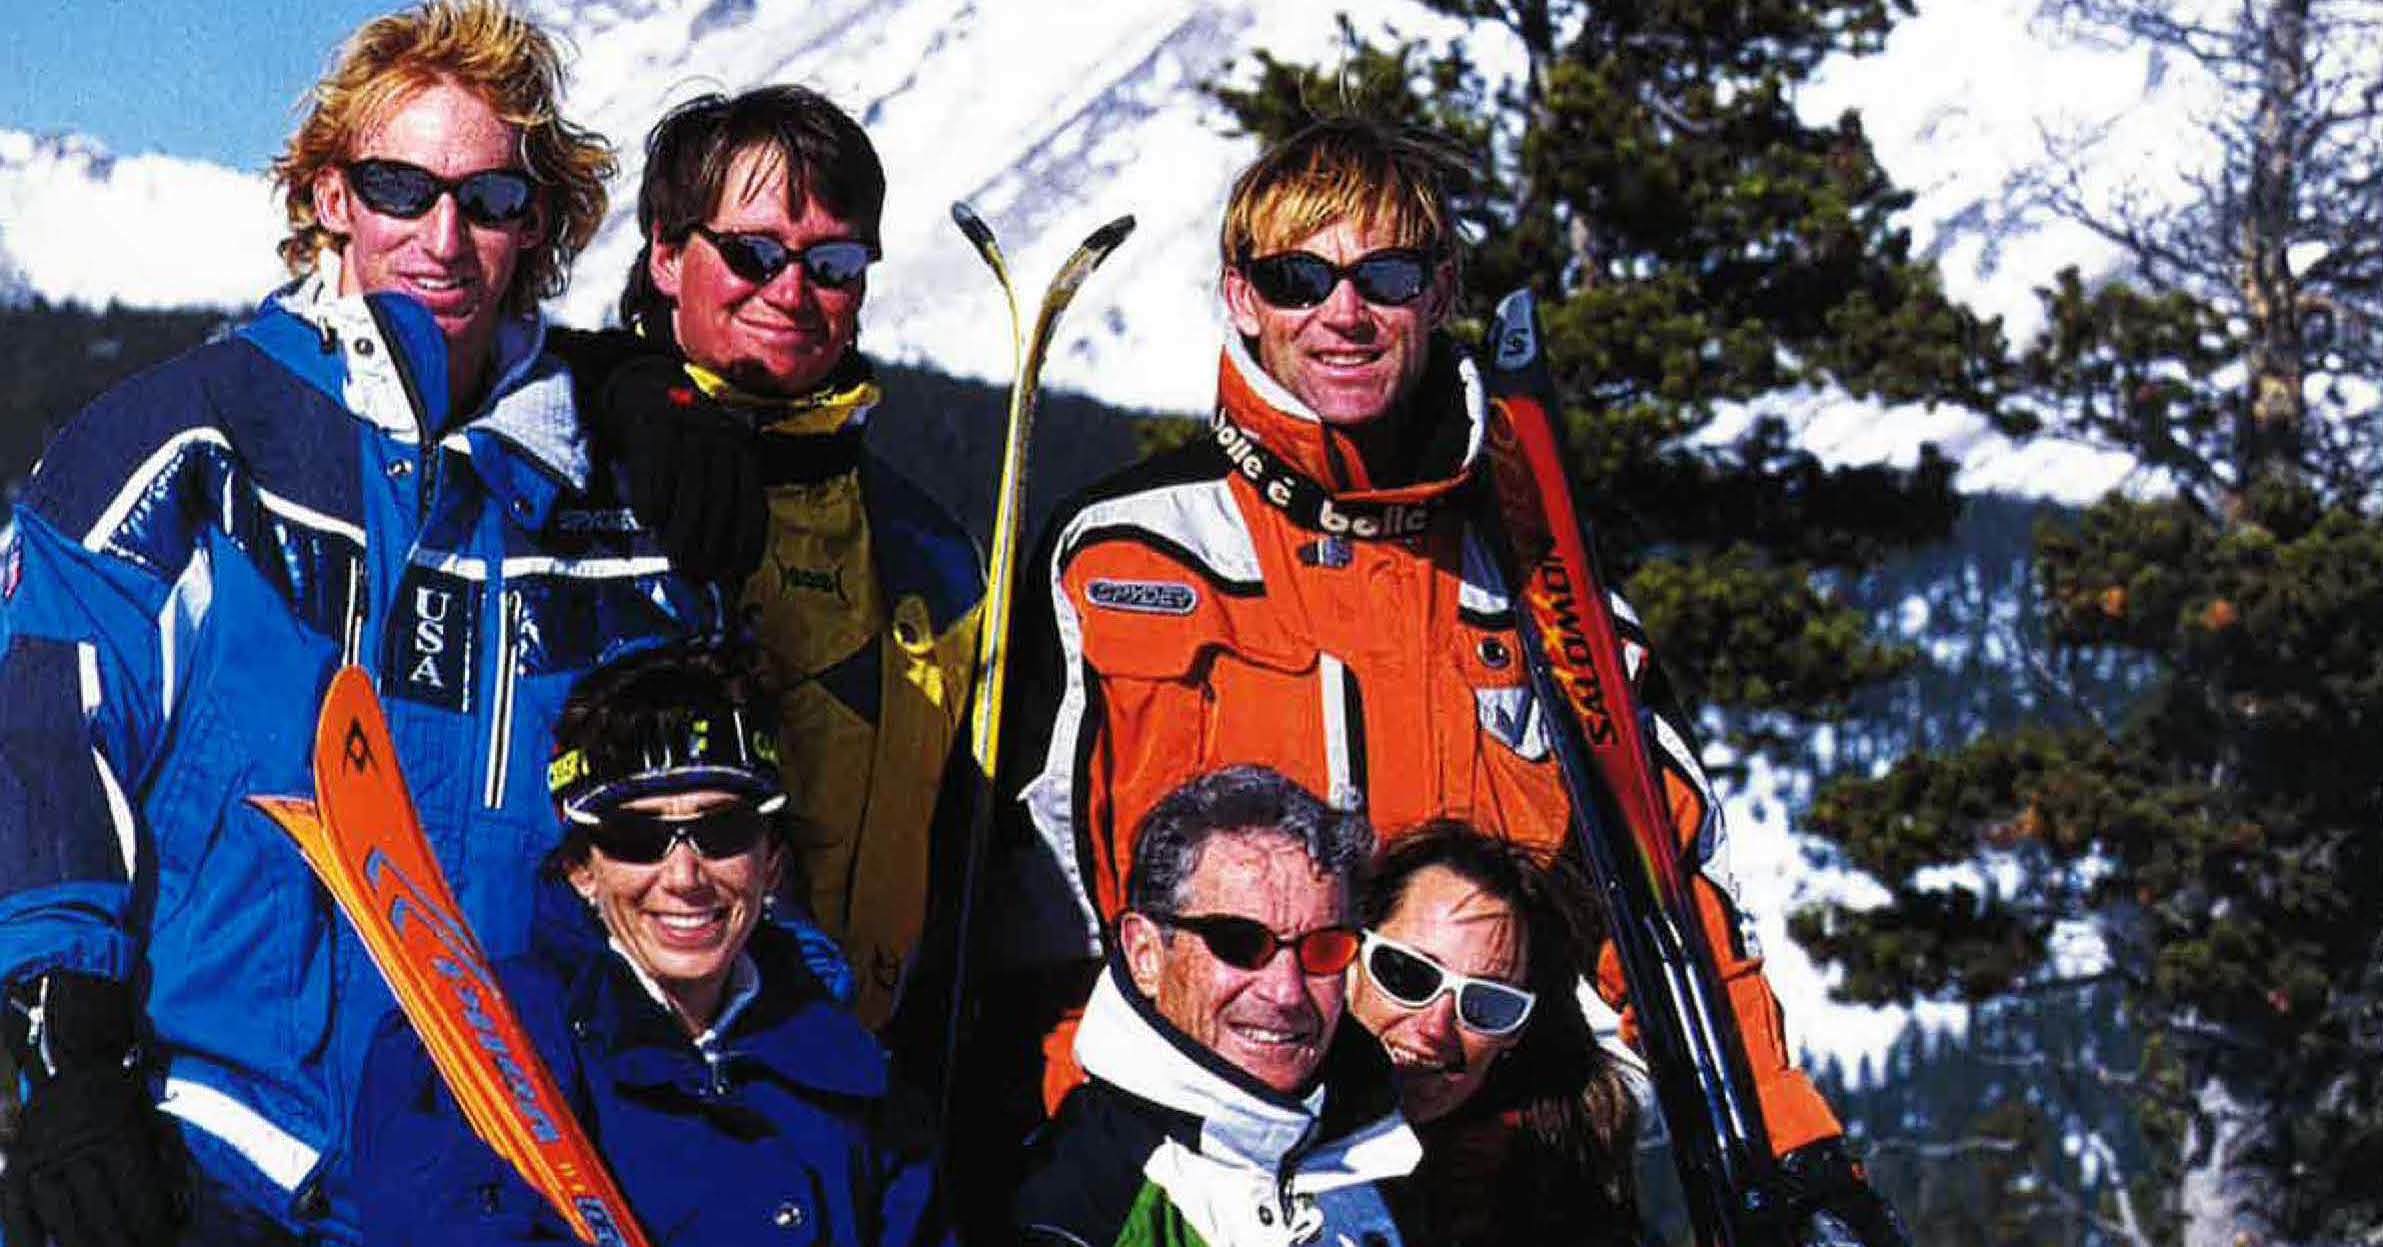 Debería Spyder modernizar línea de ropa de esquí? Winter coming -